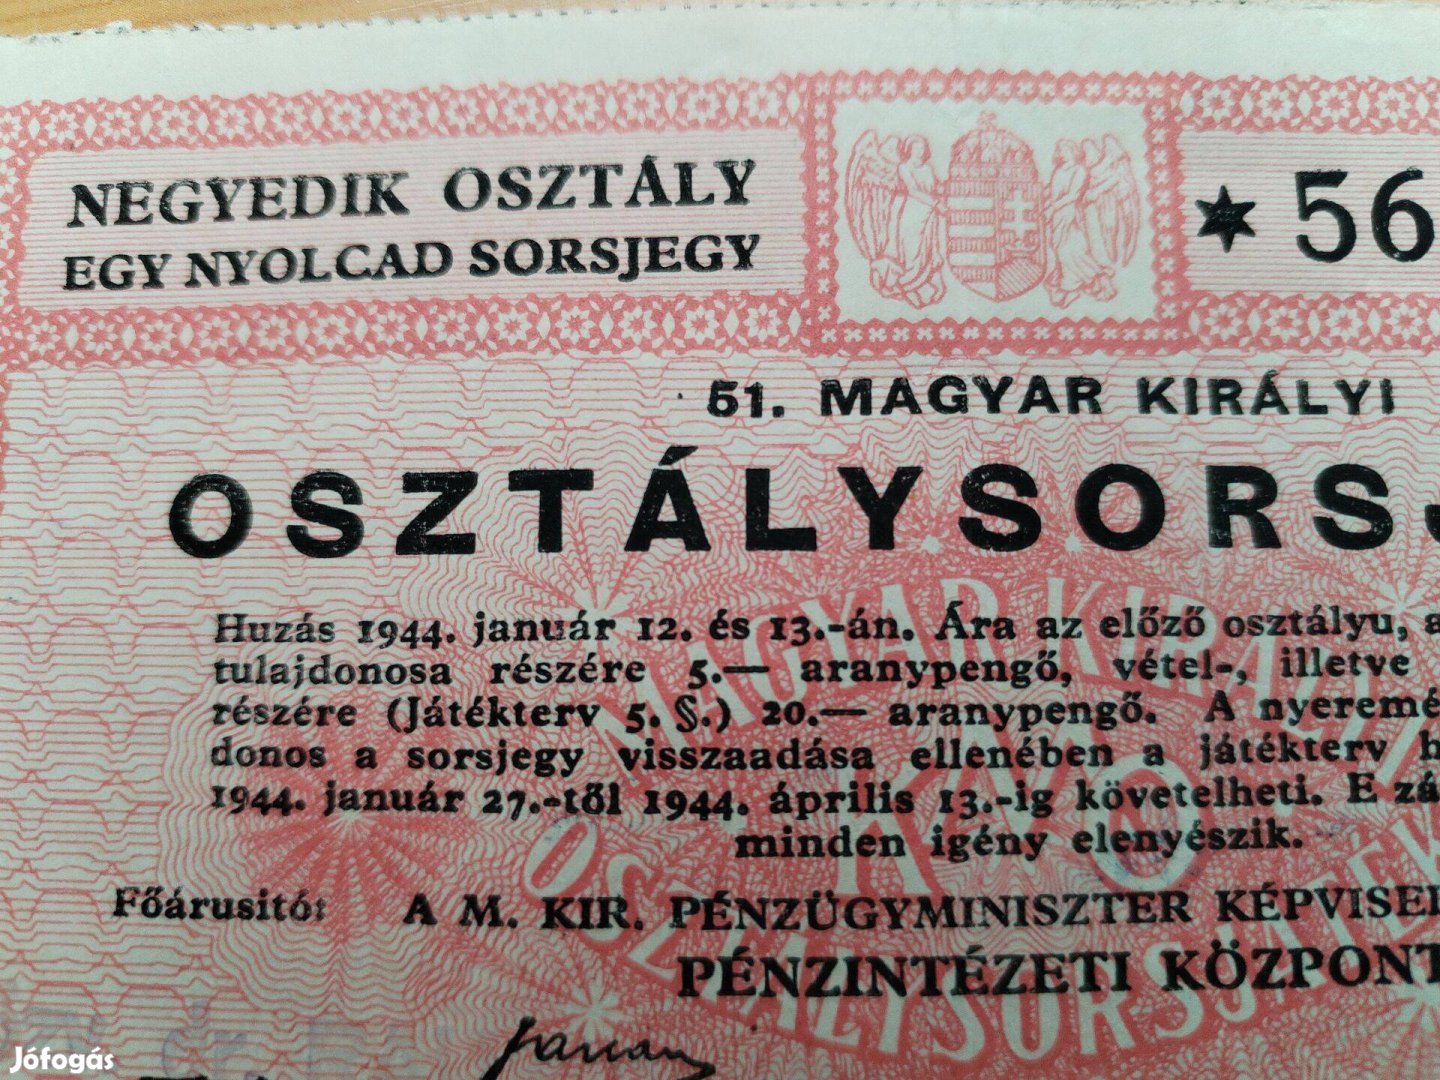 1944-es Magyar Királyi Osztálysorsjáték